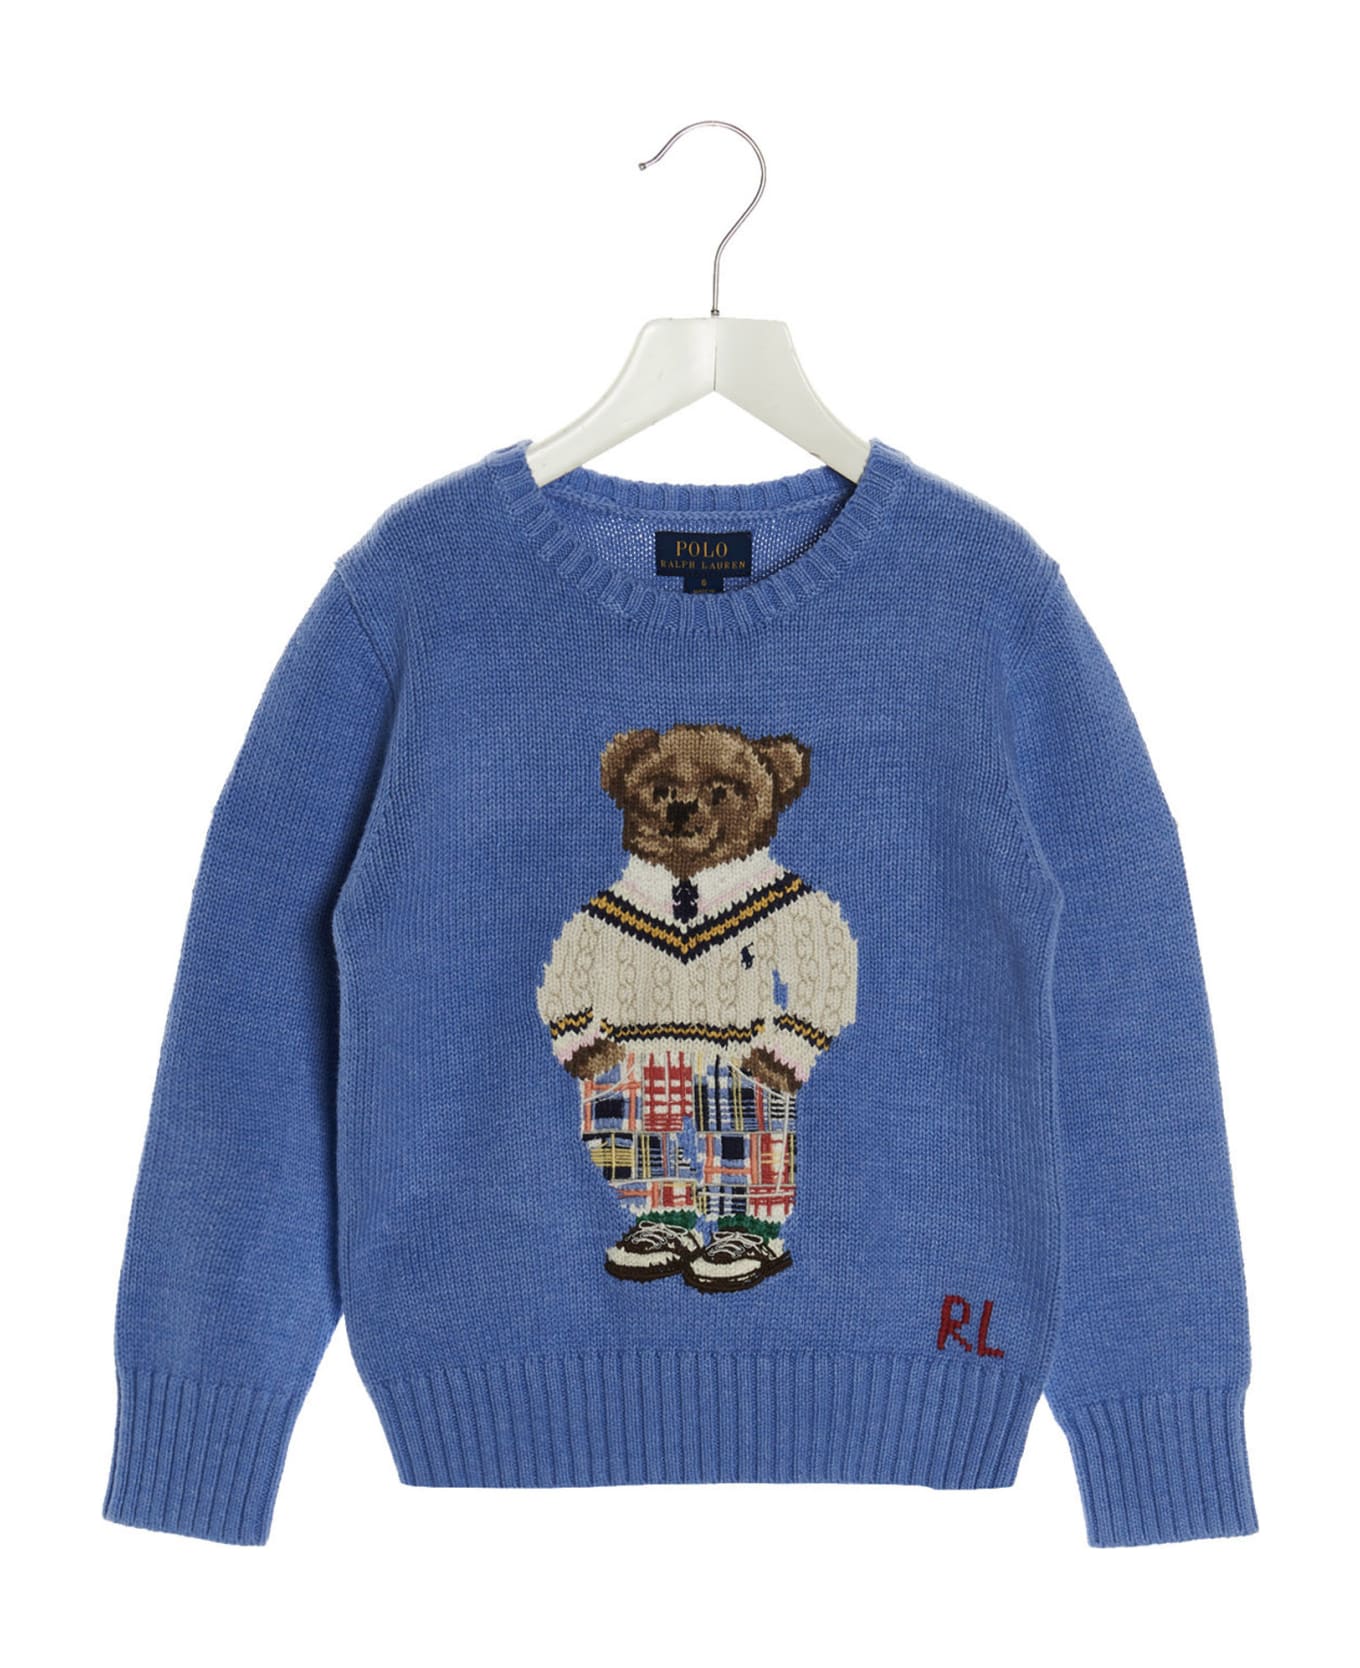 Polo Ralph Lauren 'bear' Sweater - Light Blue